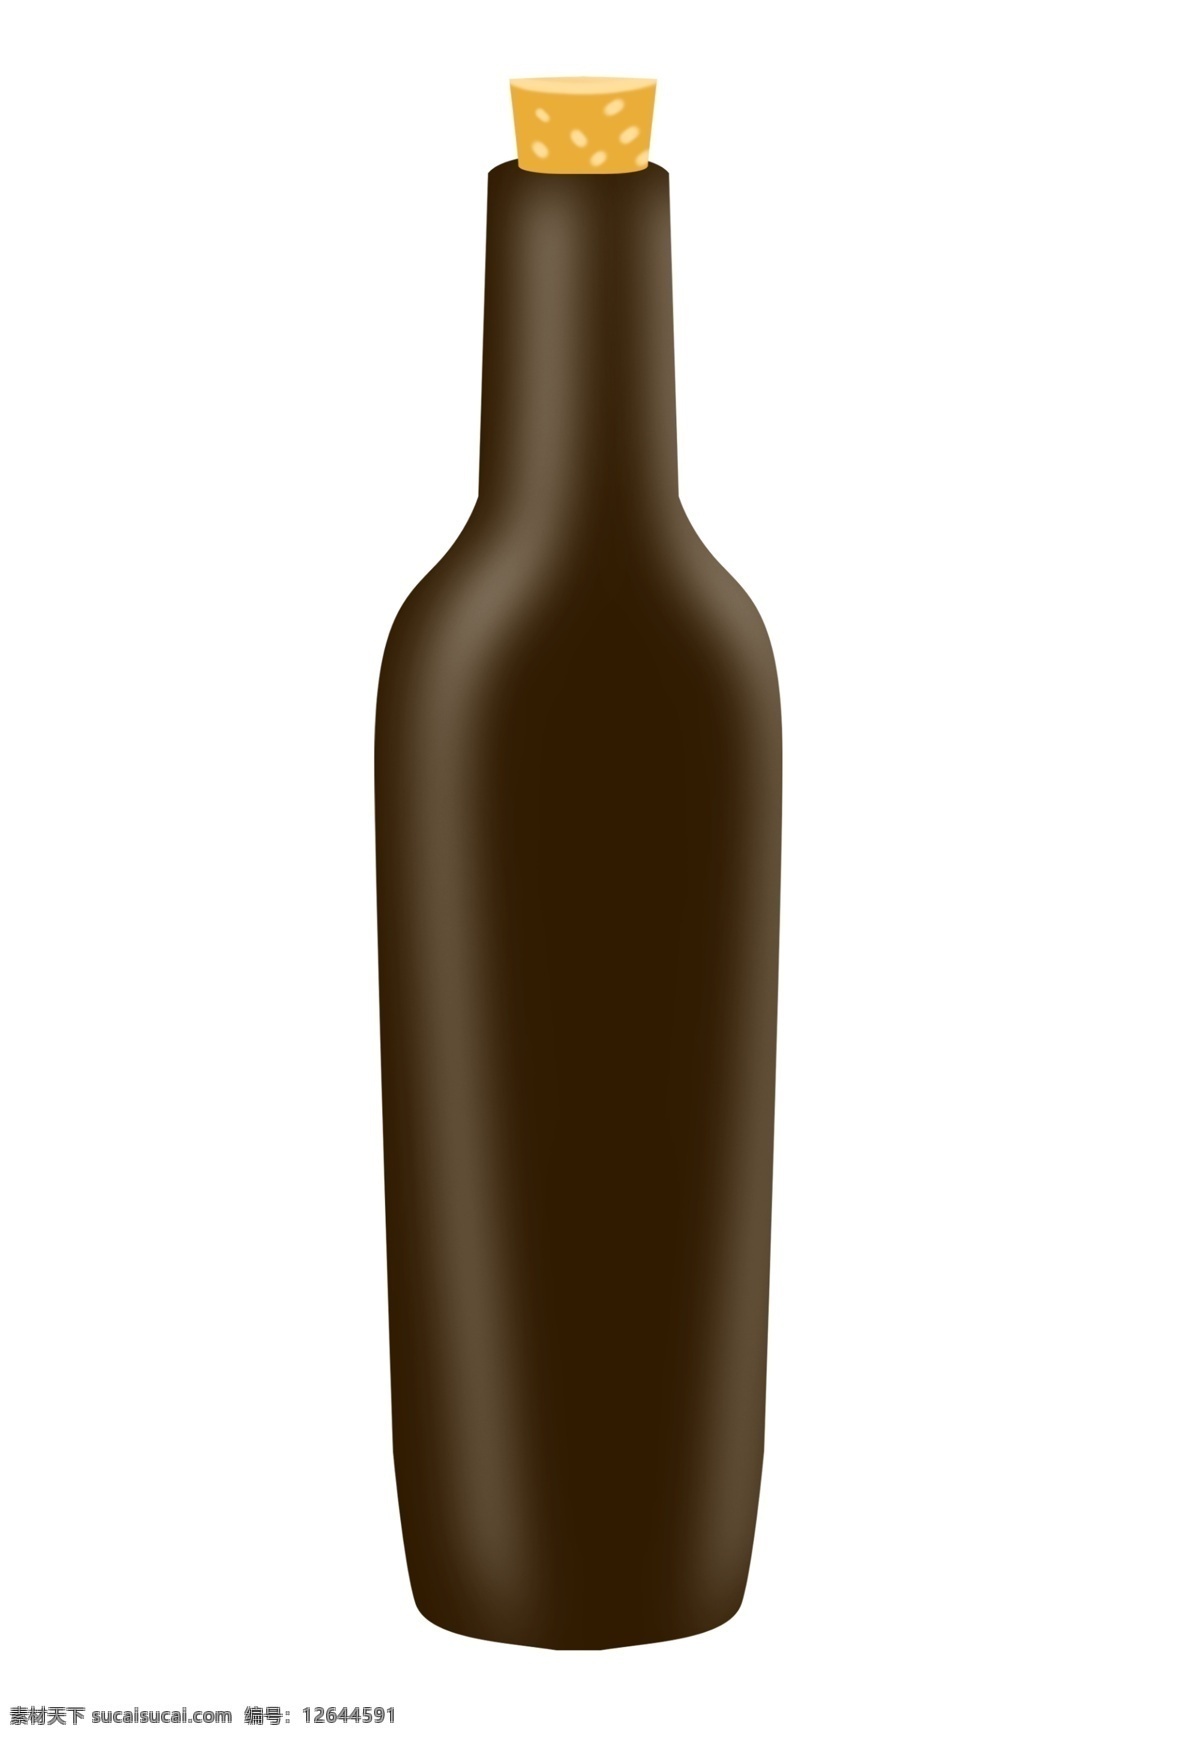 黑色 红酒 瓶子 插图 葡萄酒 酒 黑色的红酒瓶 红酒瓶 一瓶红酒 红葡萄酒插图 红酒插画